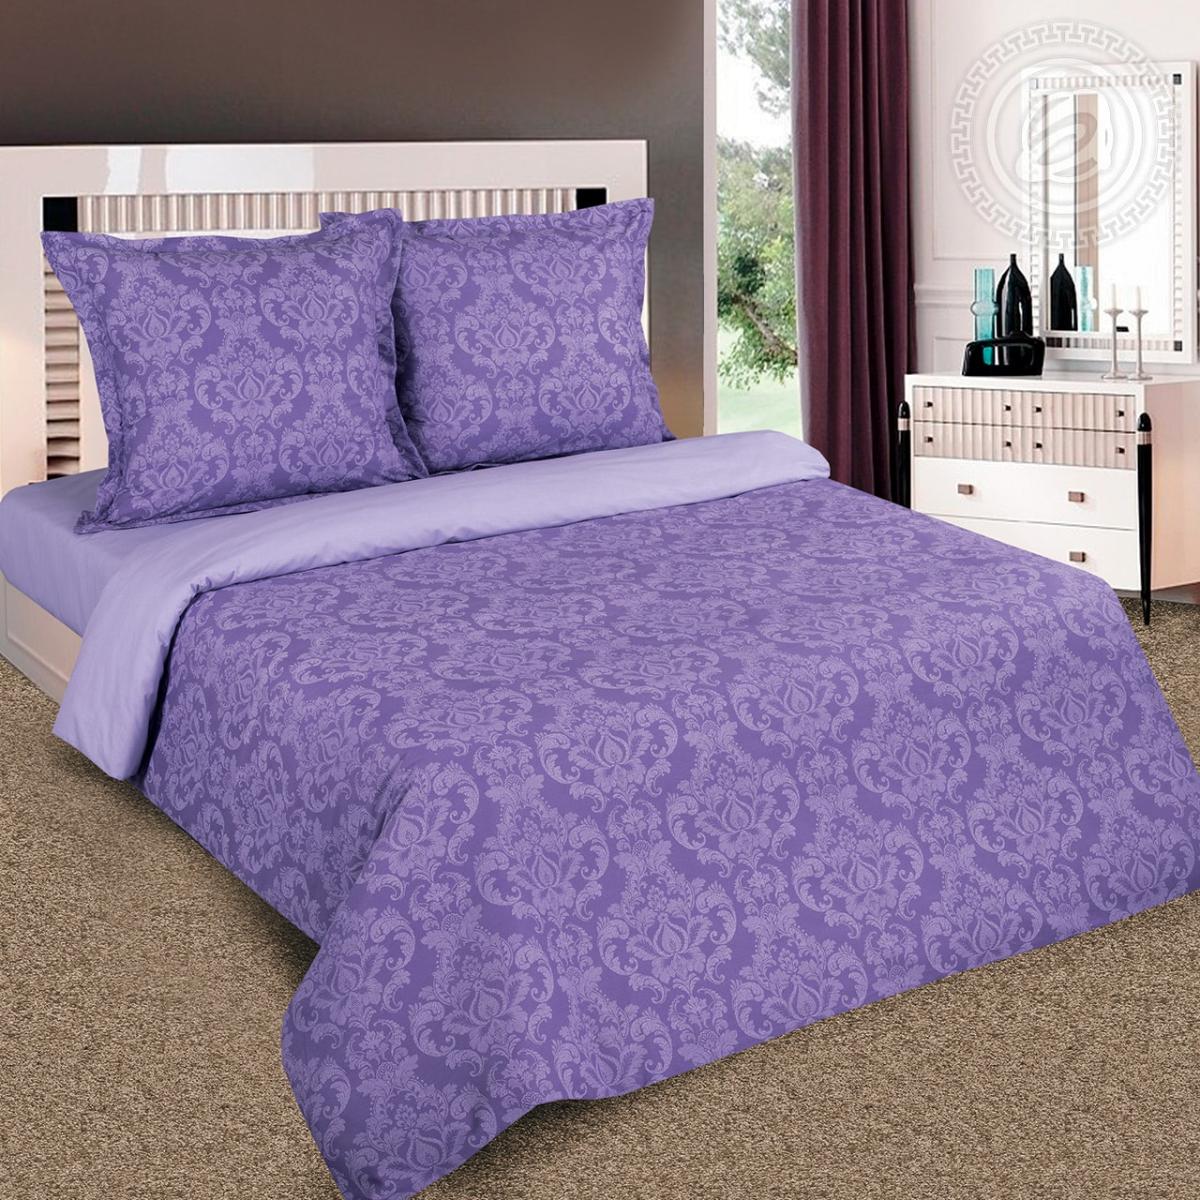 Комплект постельного белья Артпостель Византия 1.5-спальный фиолетовый